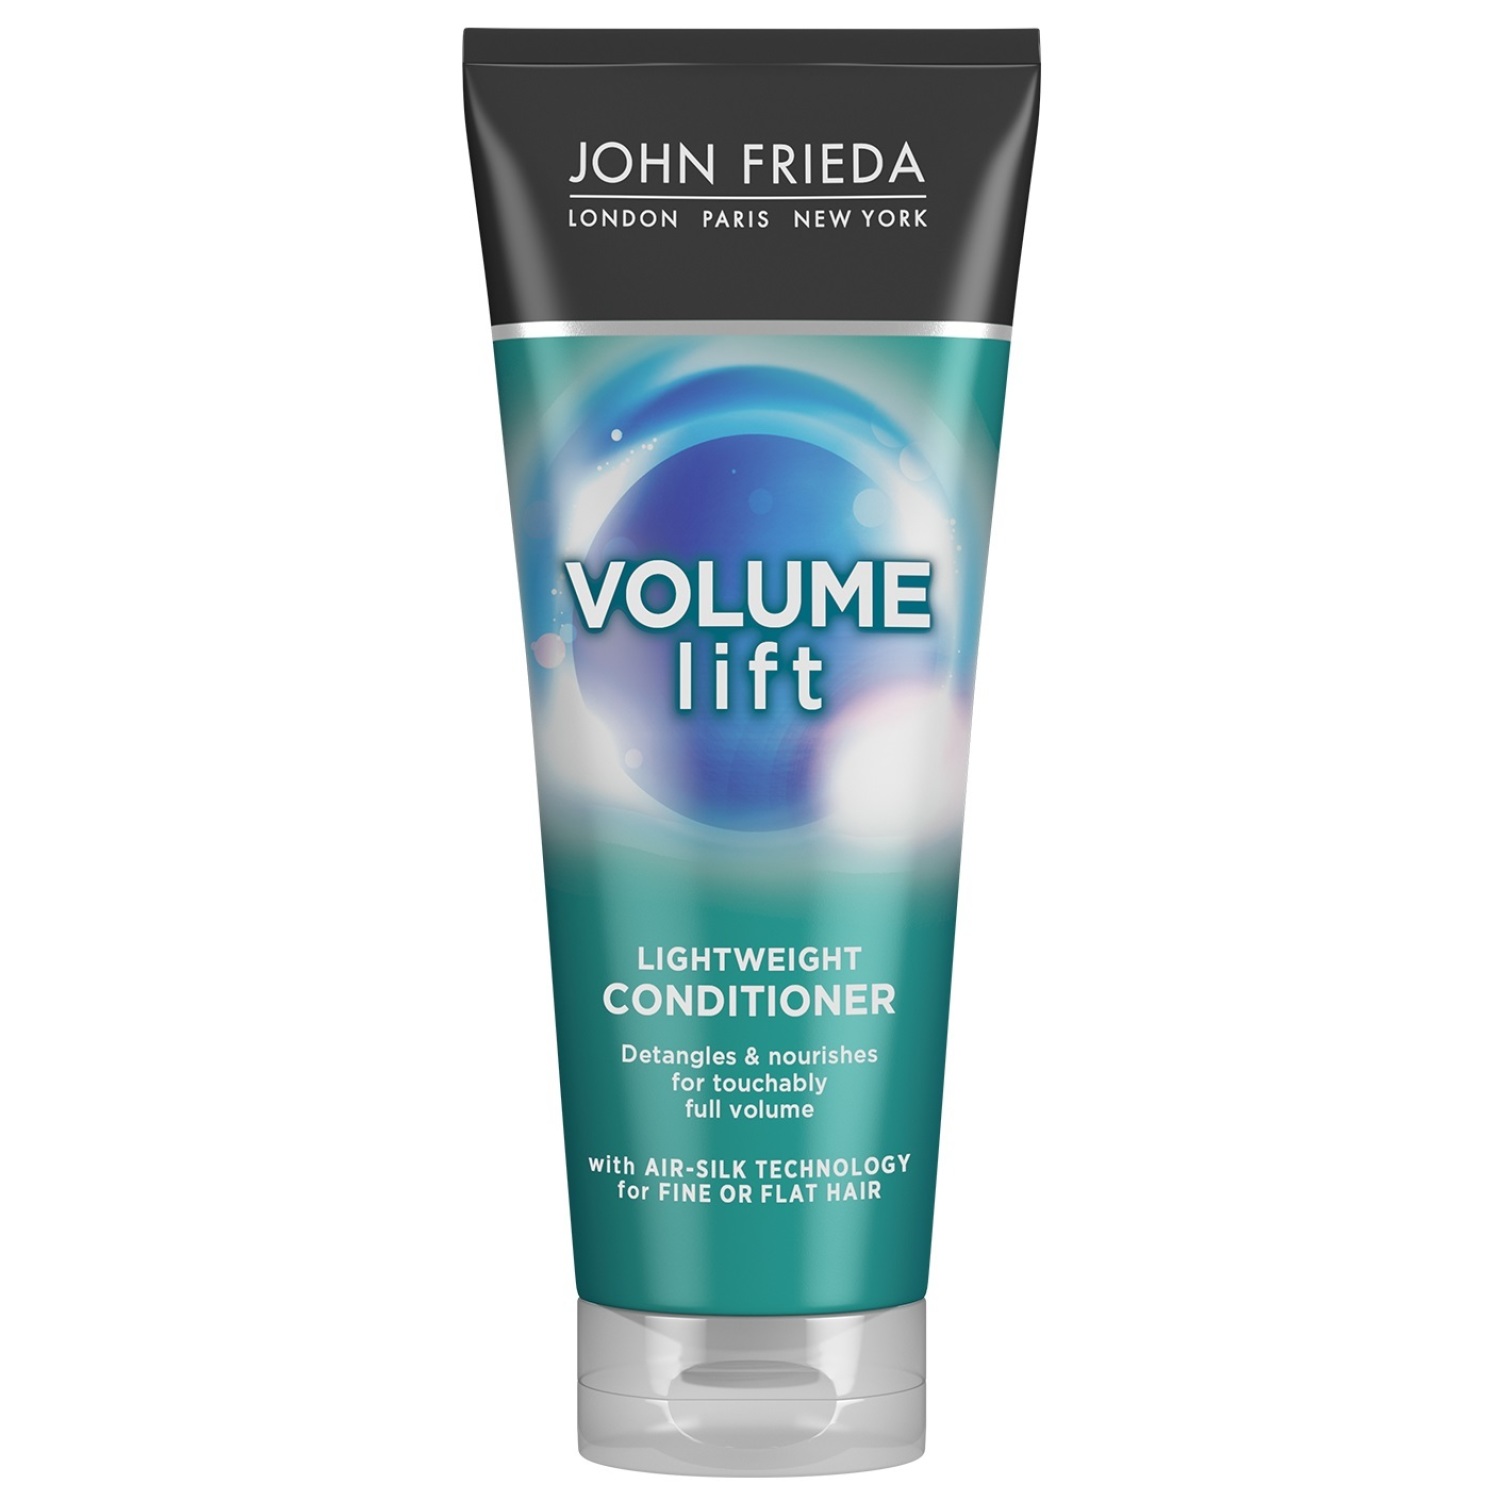 Кондиционер John Frieda Volume Lift для создания естественного объема волос 250 мл кондиционер для объема и густоты волос 300мл